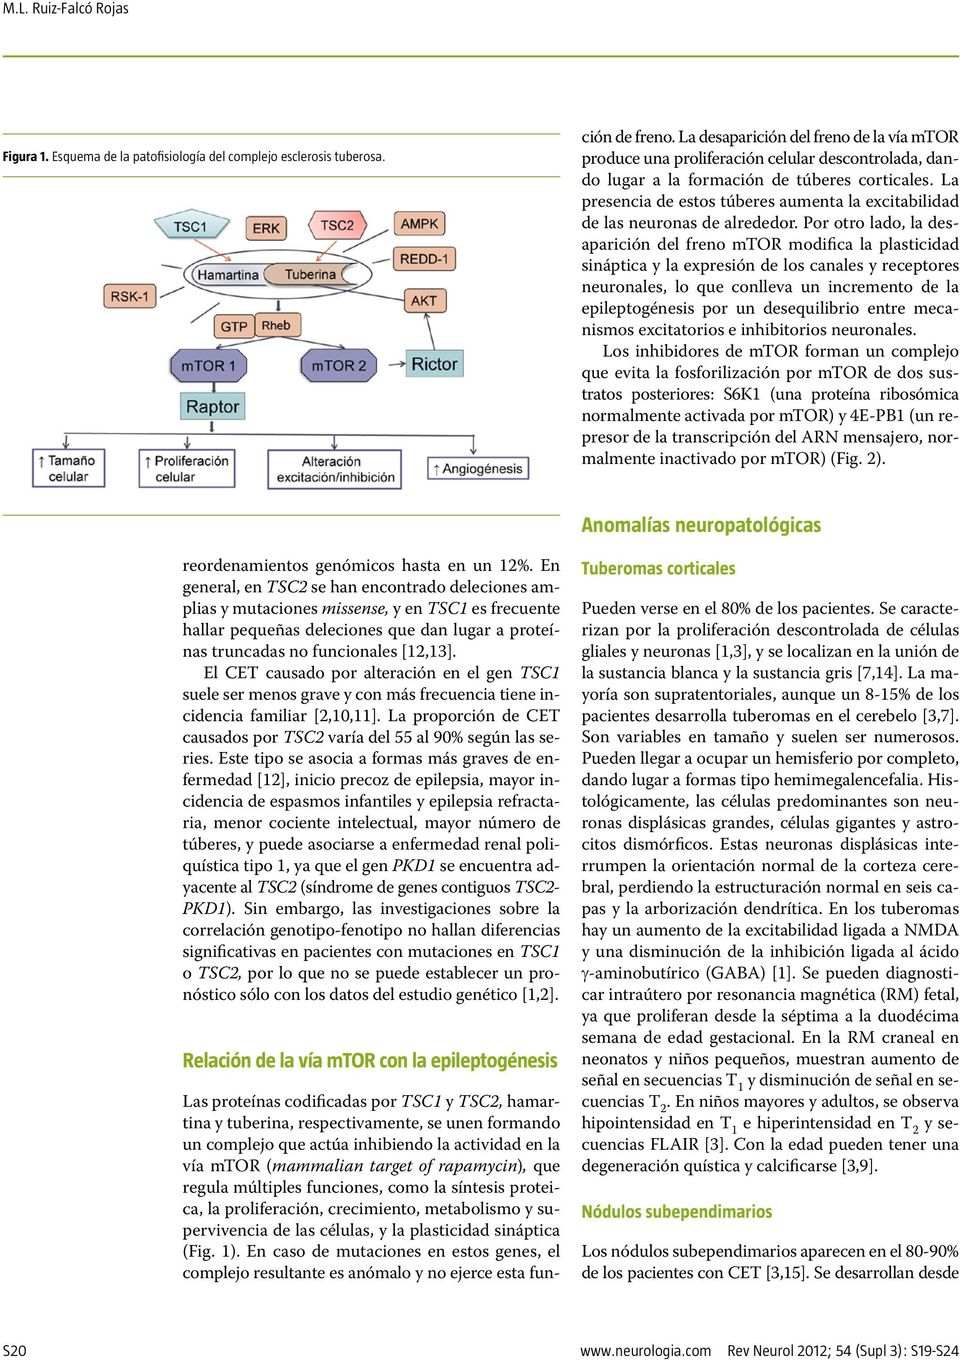 regula múltiples funciones, como la síntesis proteica, la proliferación, crecimiento, metabolismo y supervivencia de las células, y la plasticidad sináptica (Fig. 1).